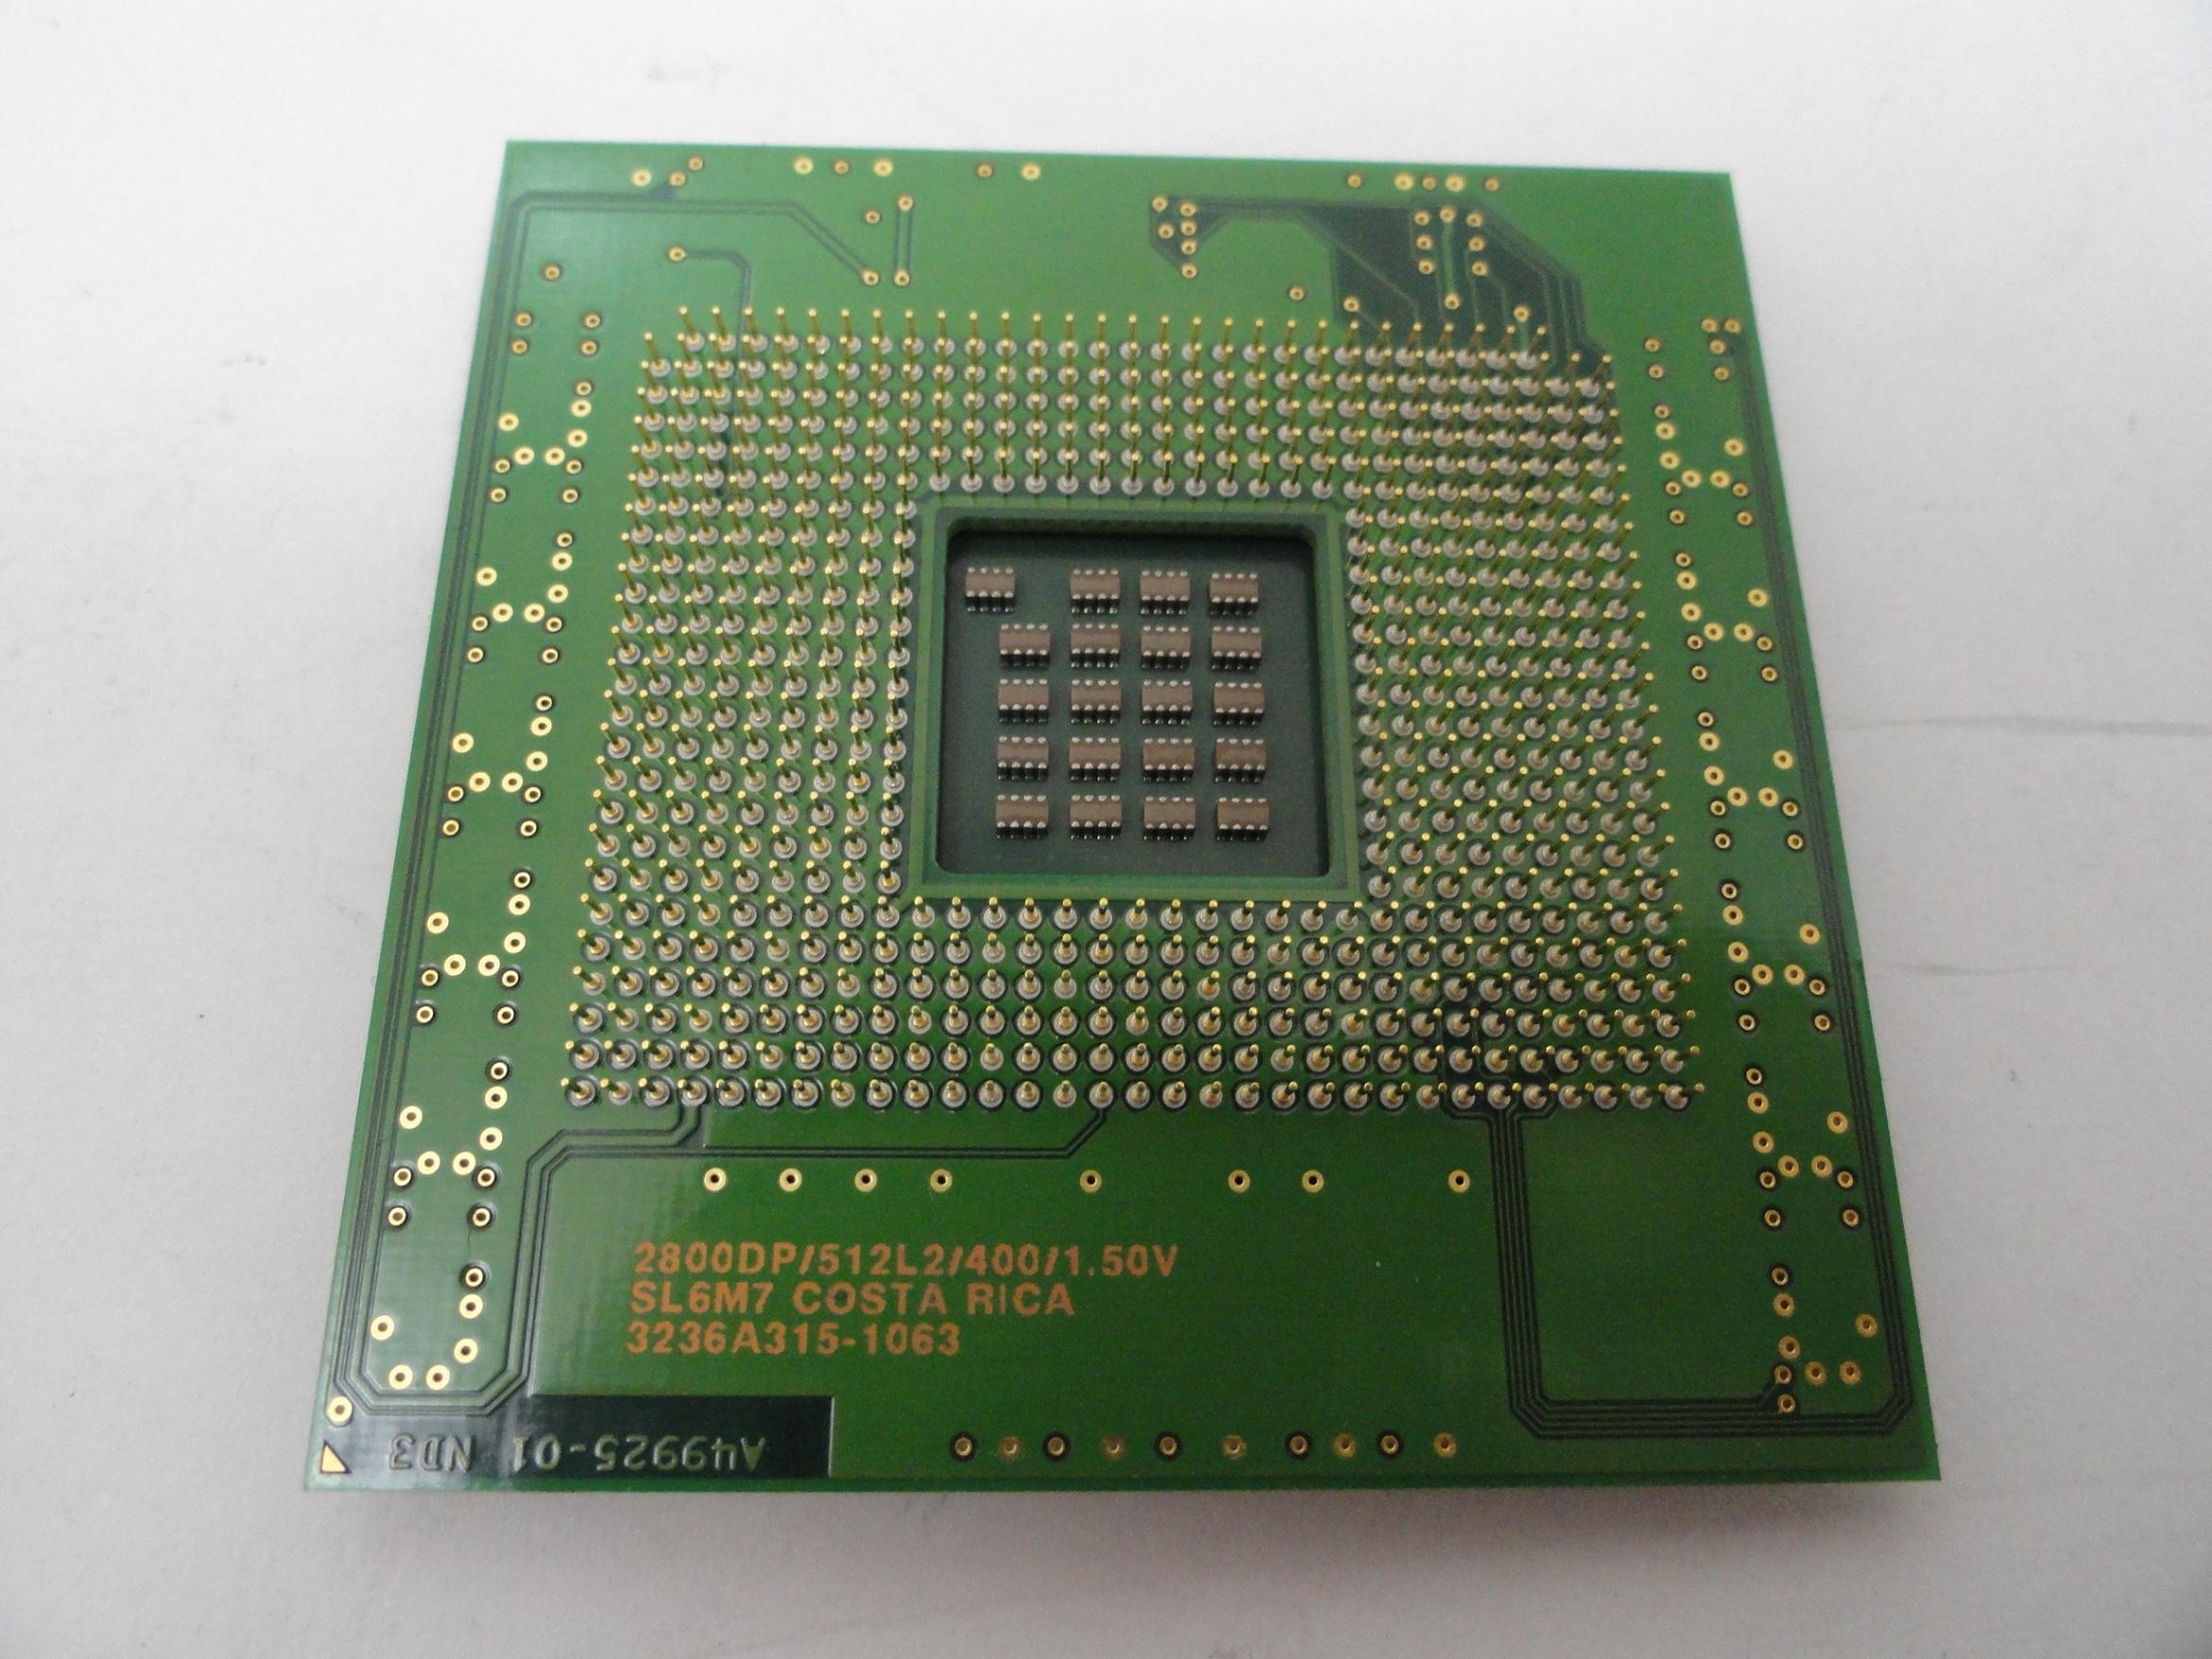 MC5216_SL6M7_Intel Xeon 2.8GHz 400MHz FSB 512Kb Cache - Image2